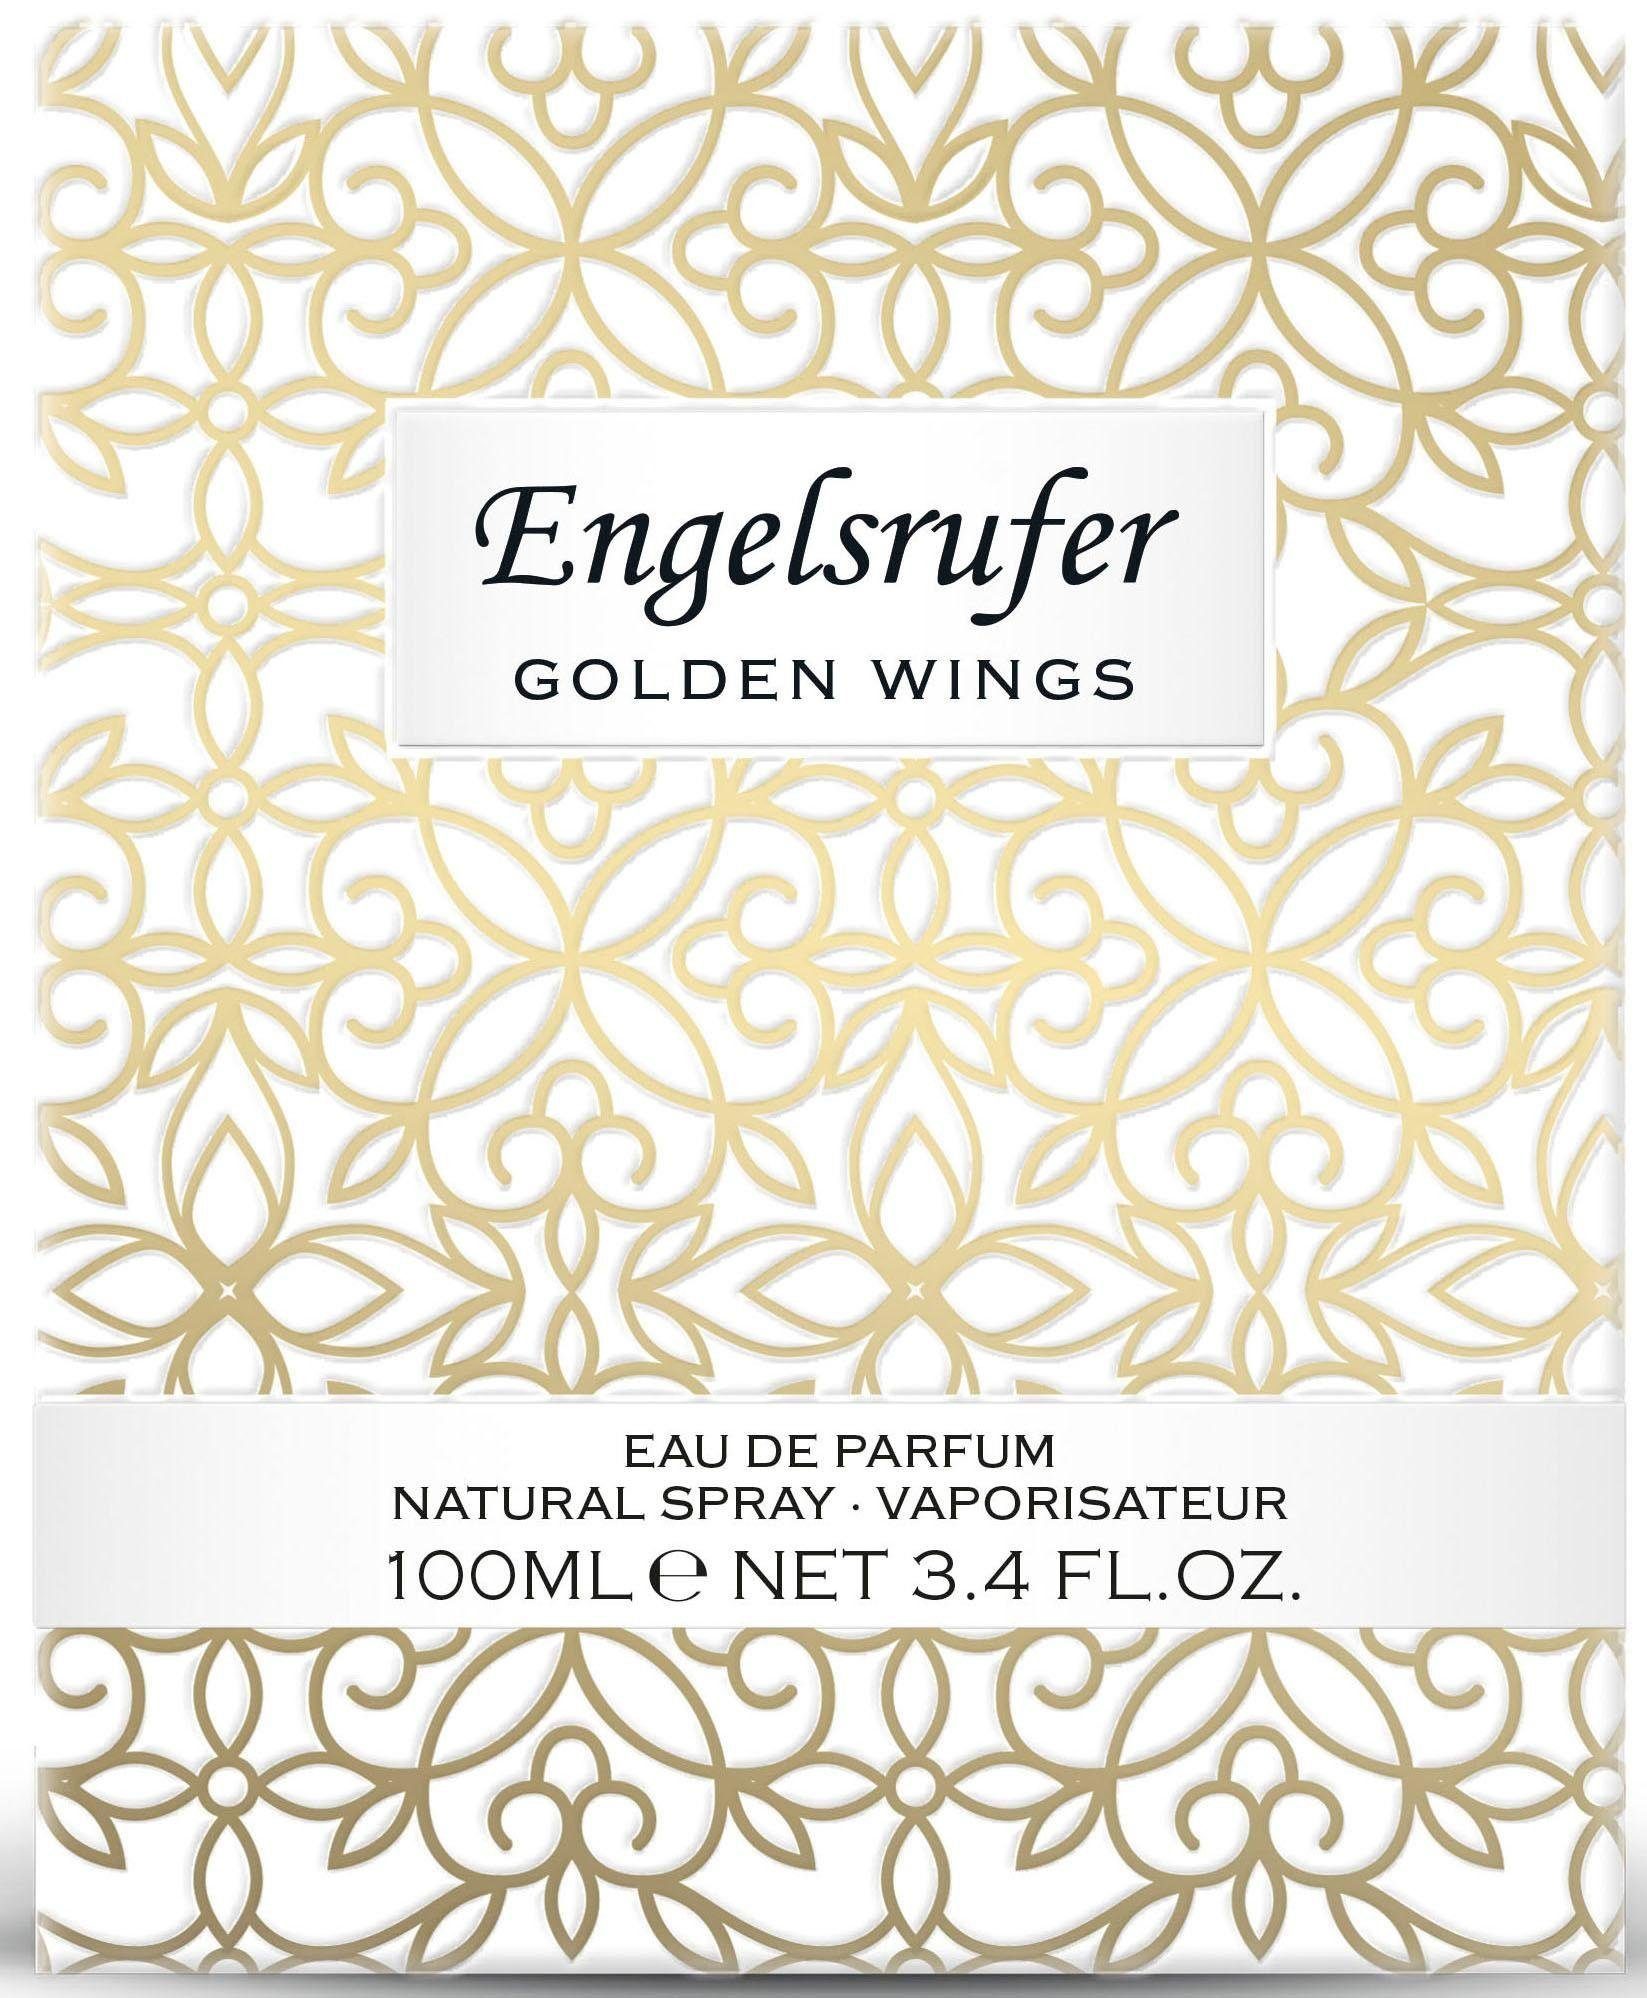 Golden Parfum Eau Engelsrufer de Wings